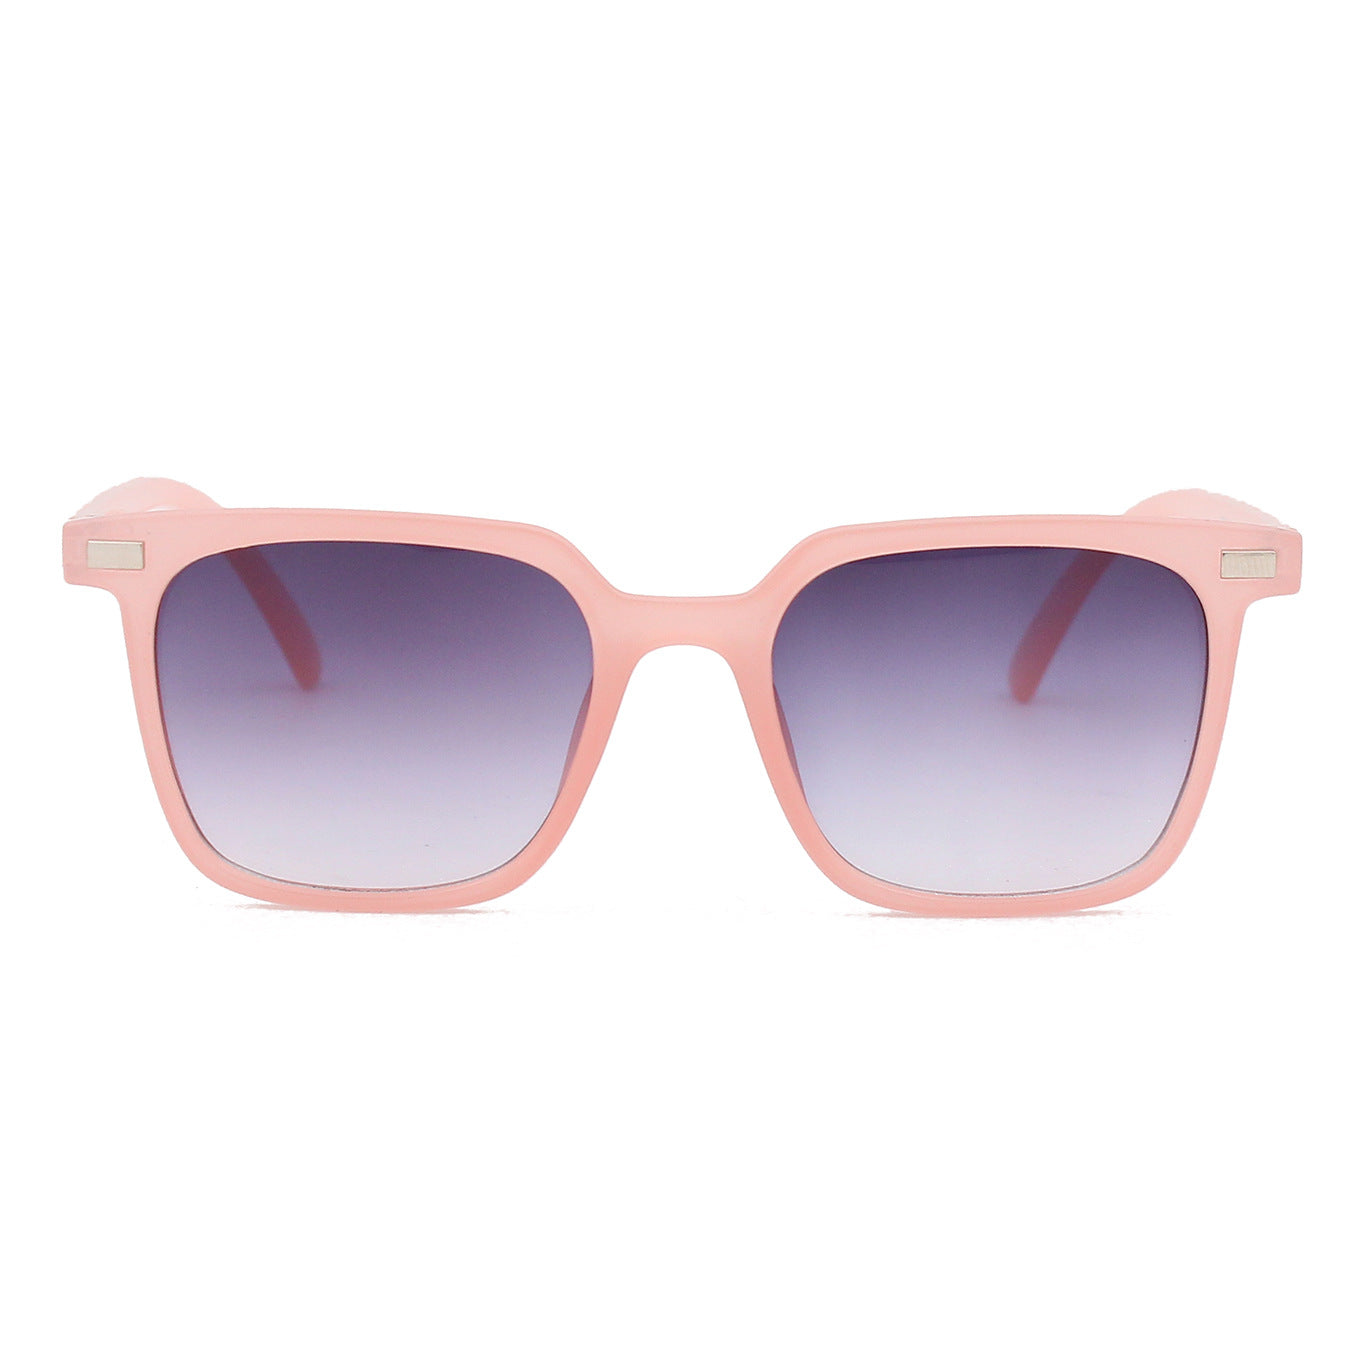 Glasses Sunglasses Retro Multicolored Frame Rice Nail Sunglasses